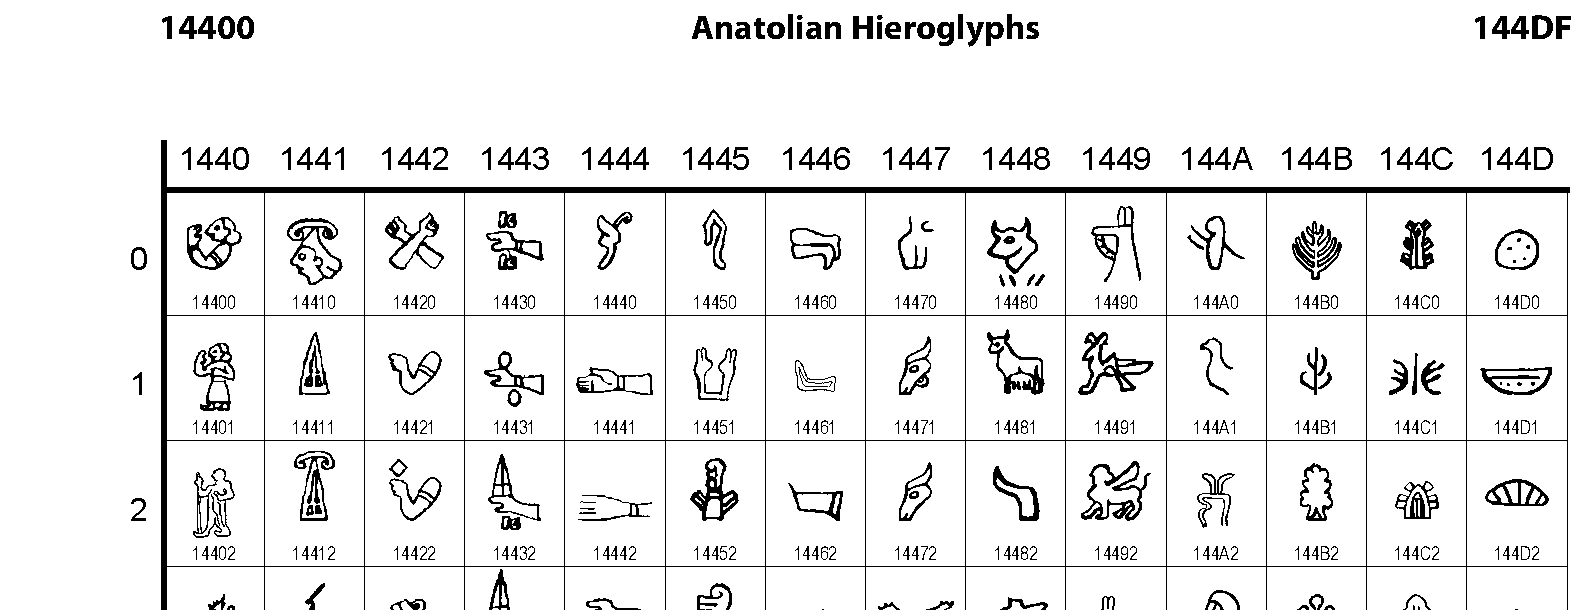 Unicode - Anatolian Hieroglyphs